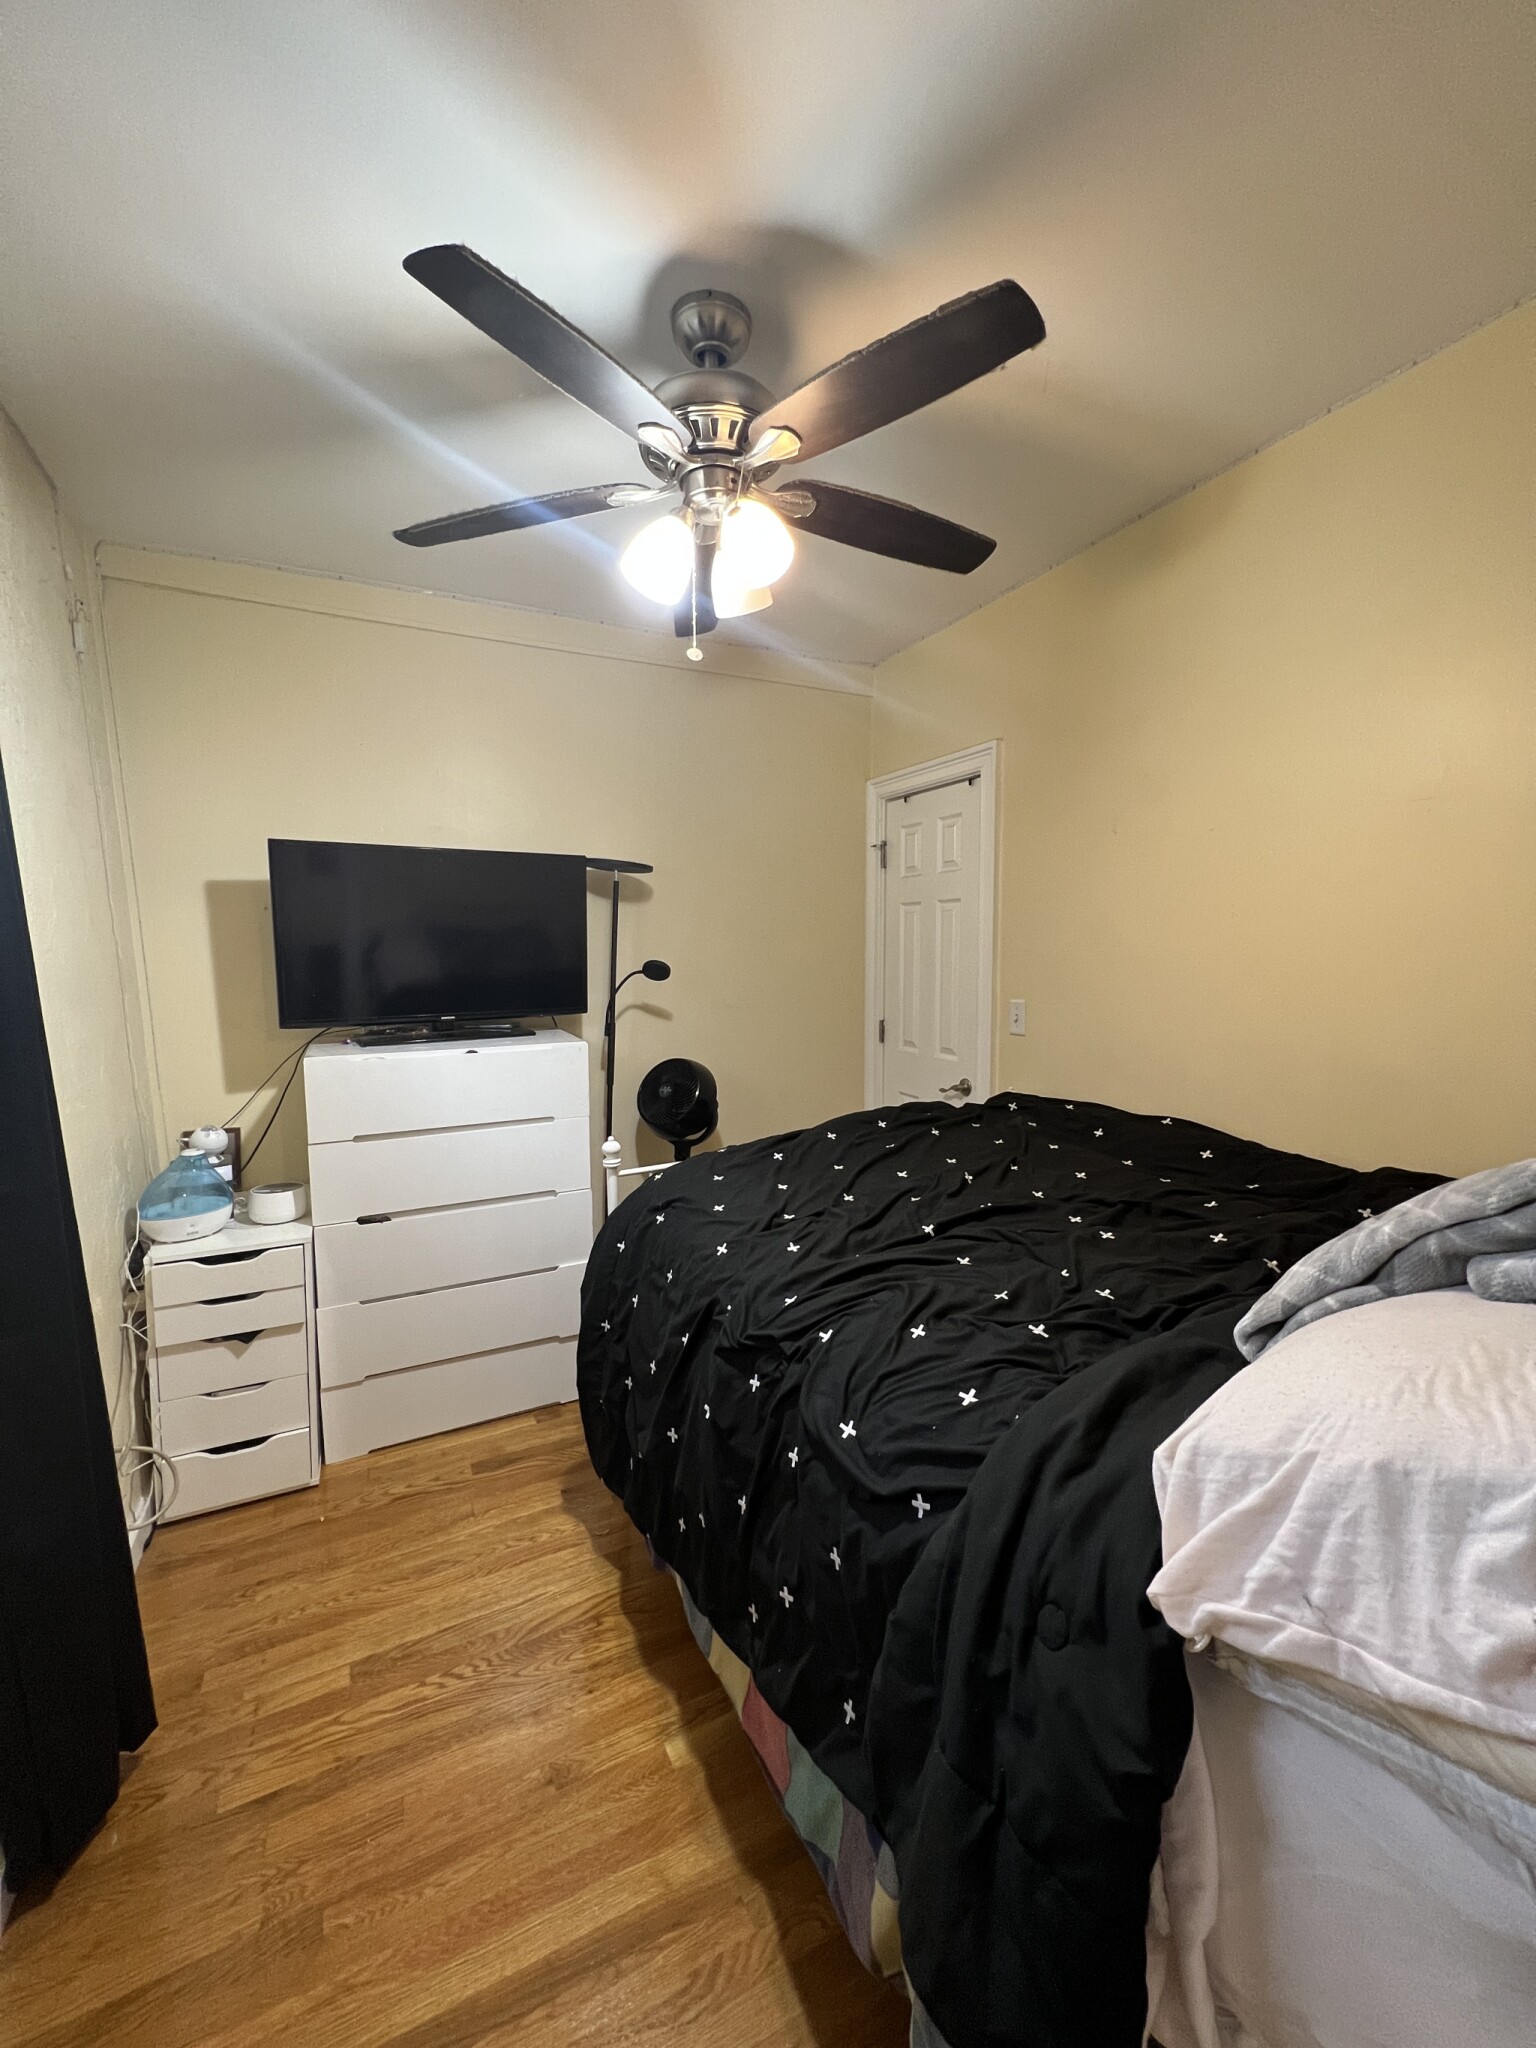 Photos of apartment on Otis,Somerville MA 02145